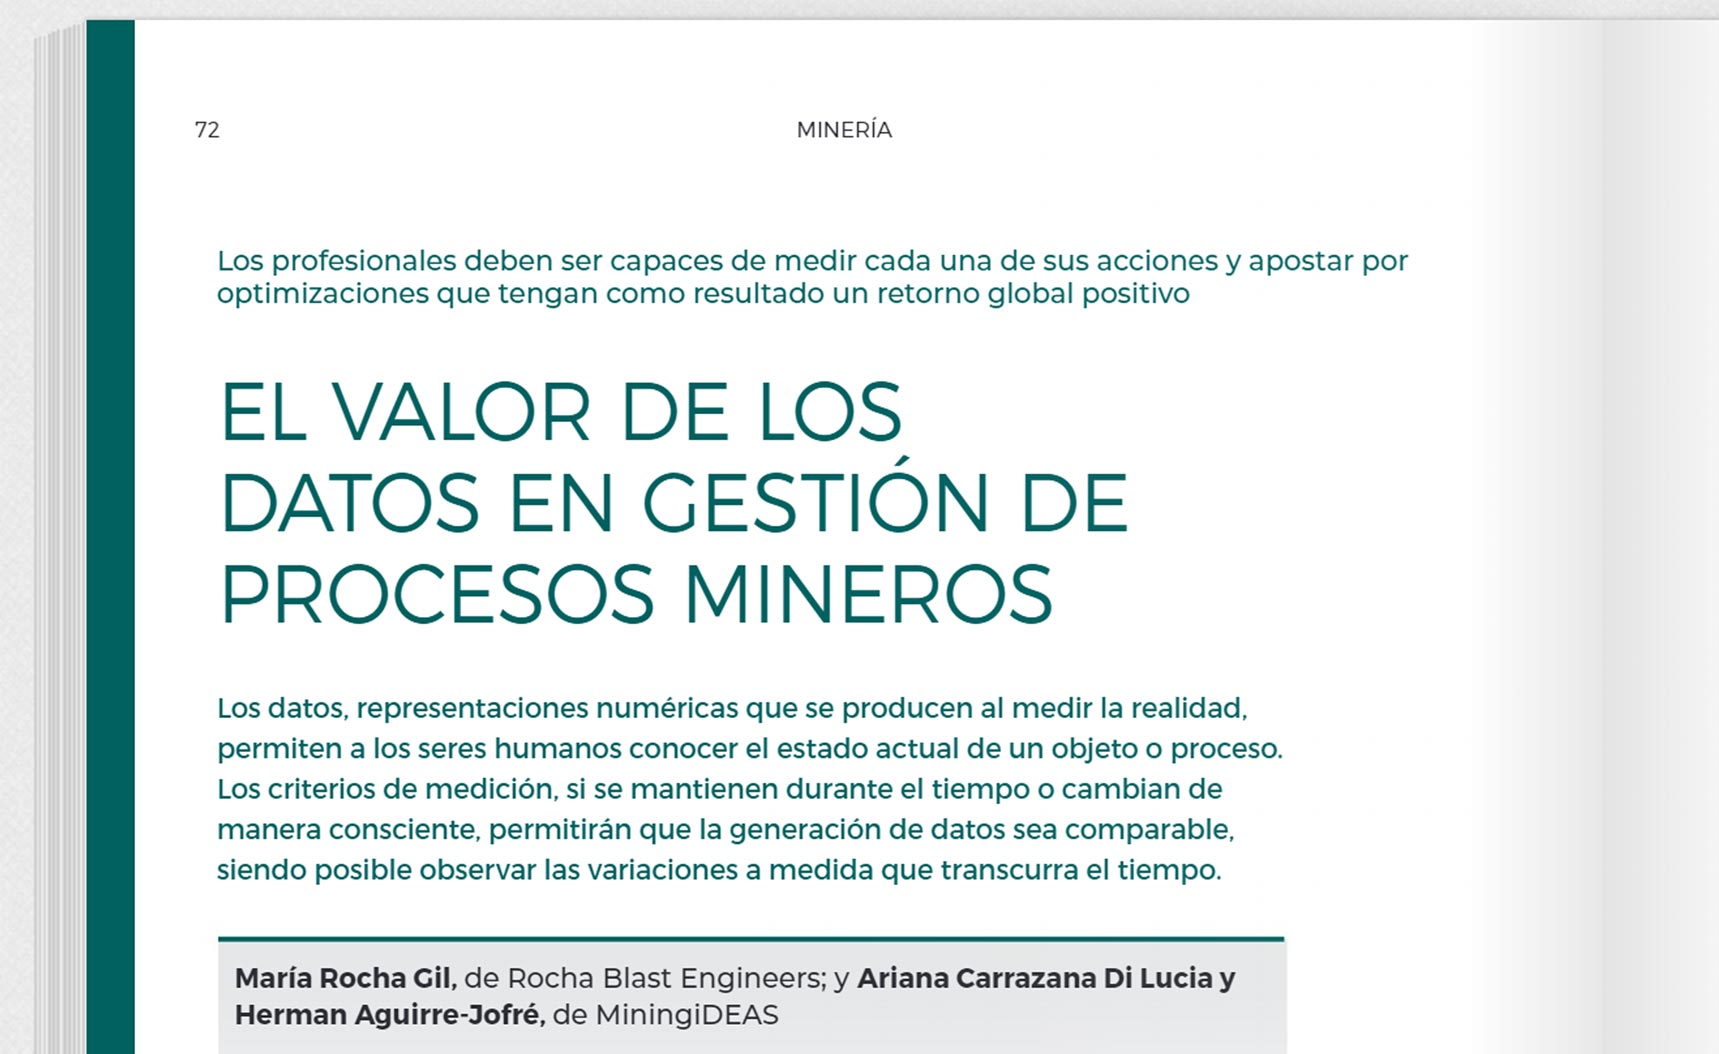 El valor de los datos en gestión de procesos mineros. MiningiDEAS